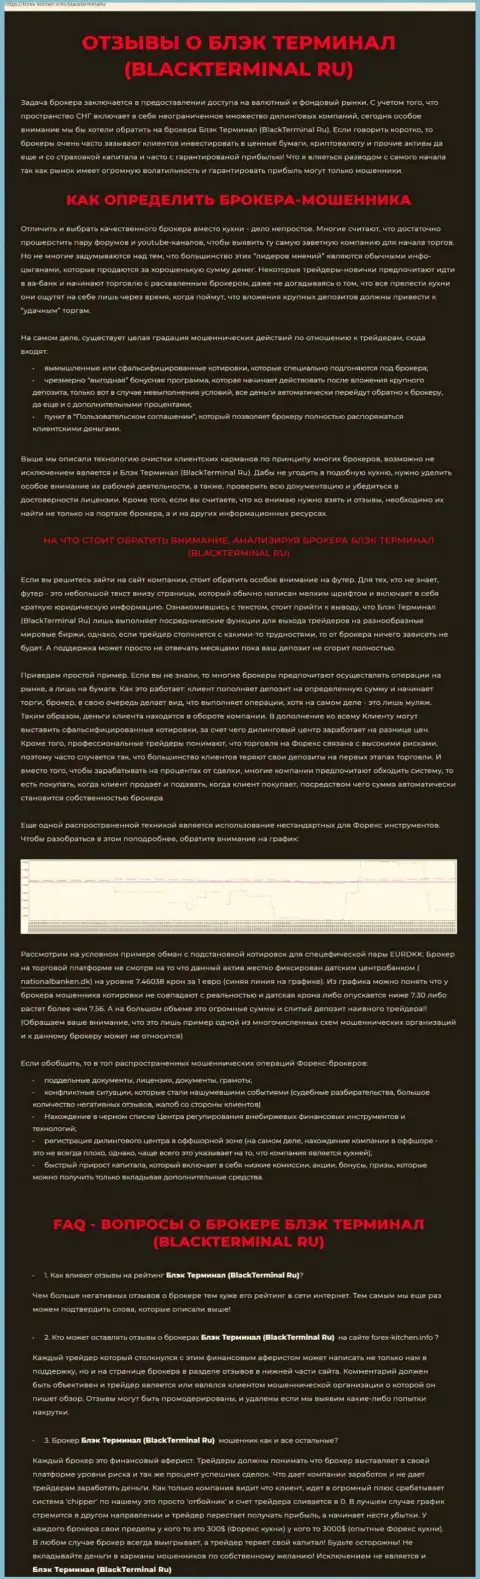 Надувательство в сети интернет !!! Обзорная статья об неправомерных действиях internet мошенников BlackTerminal Ru